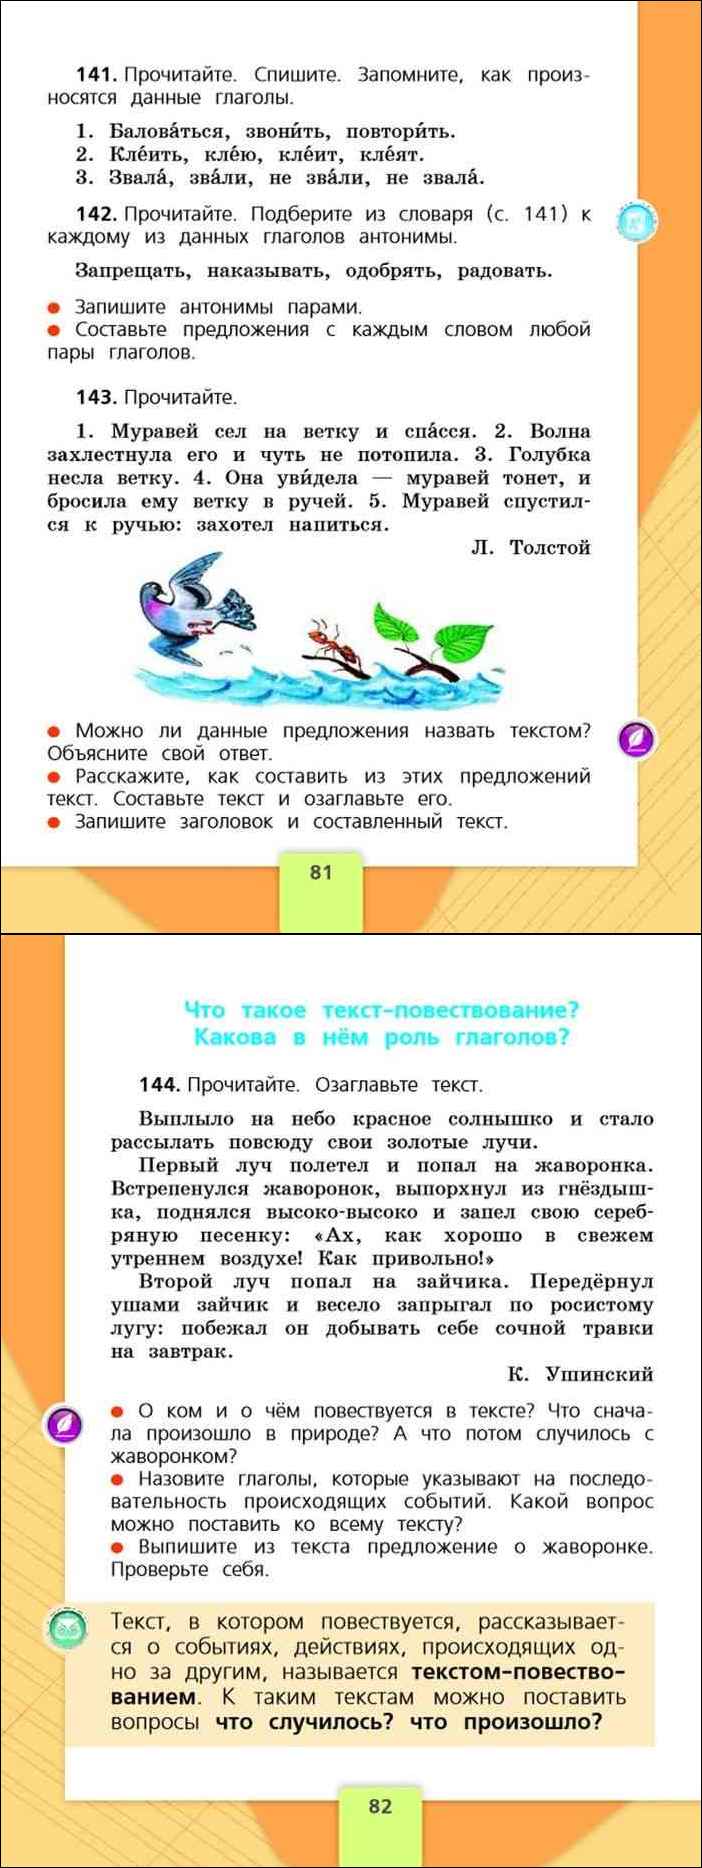 Русский язык второй класс стр 94